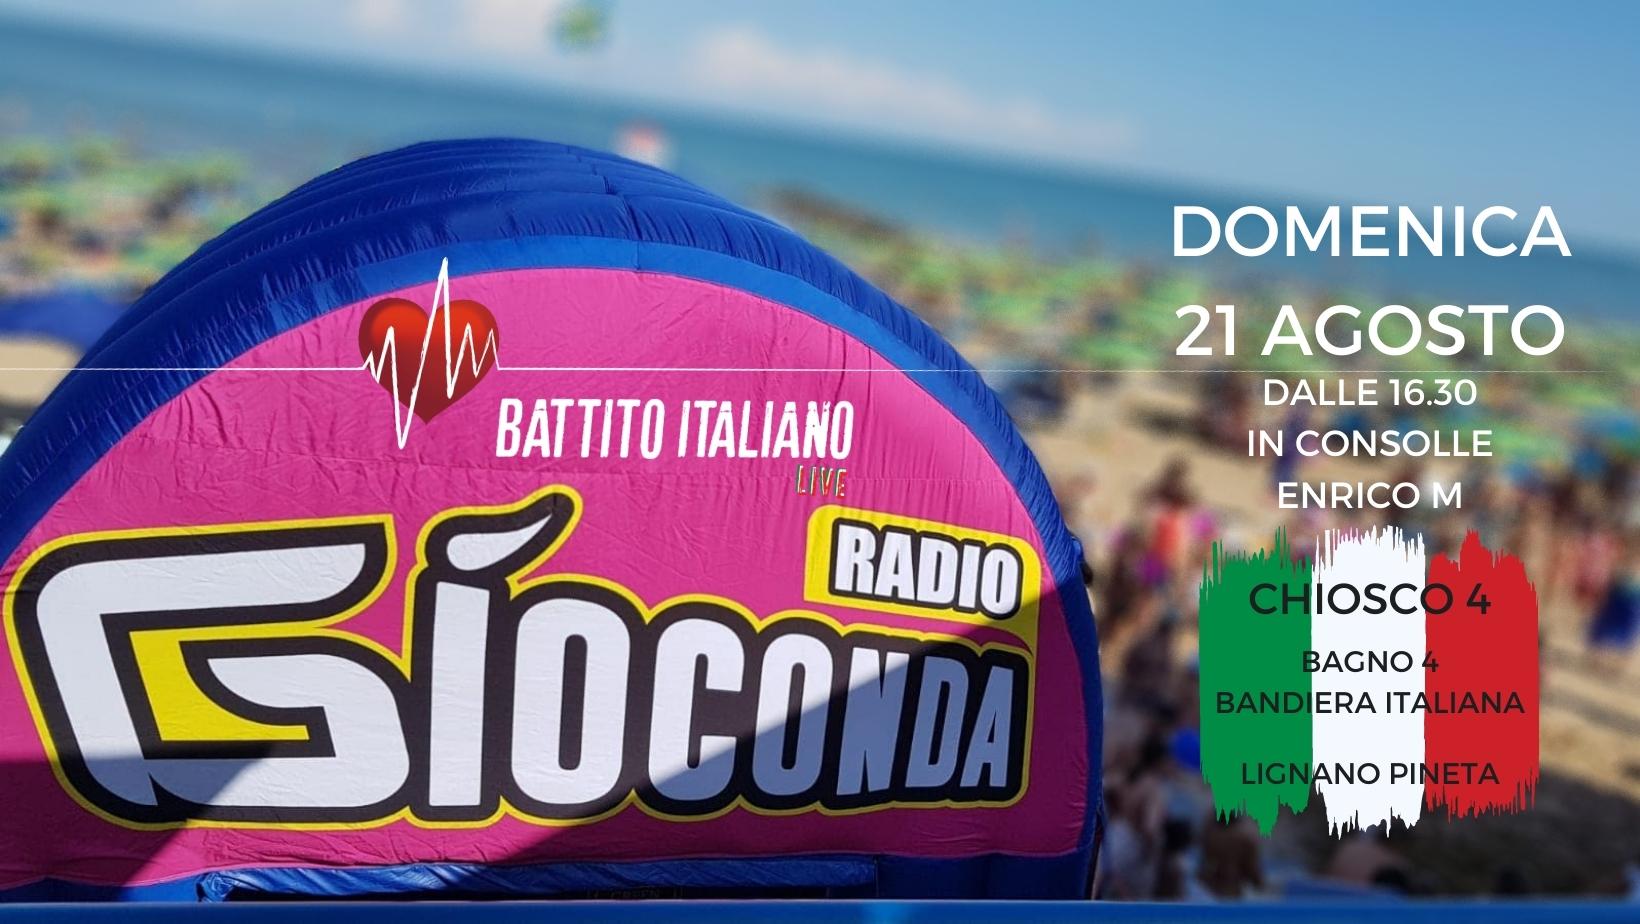 Battito Italiano Live dal Chiosco 4 di Lignano Pineta